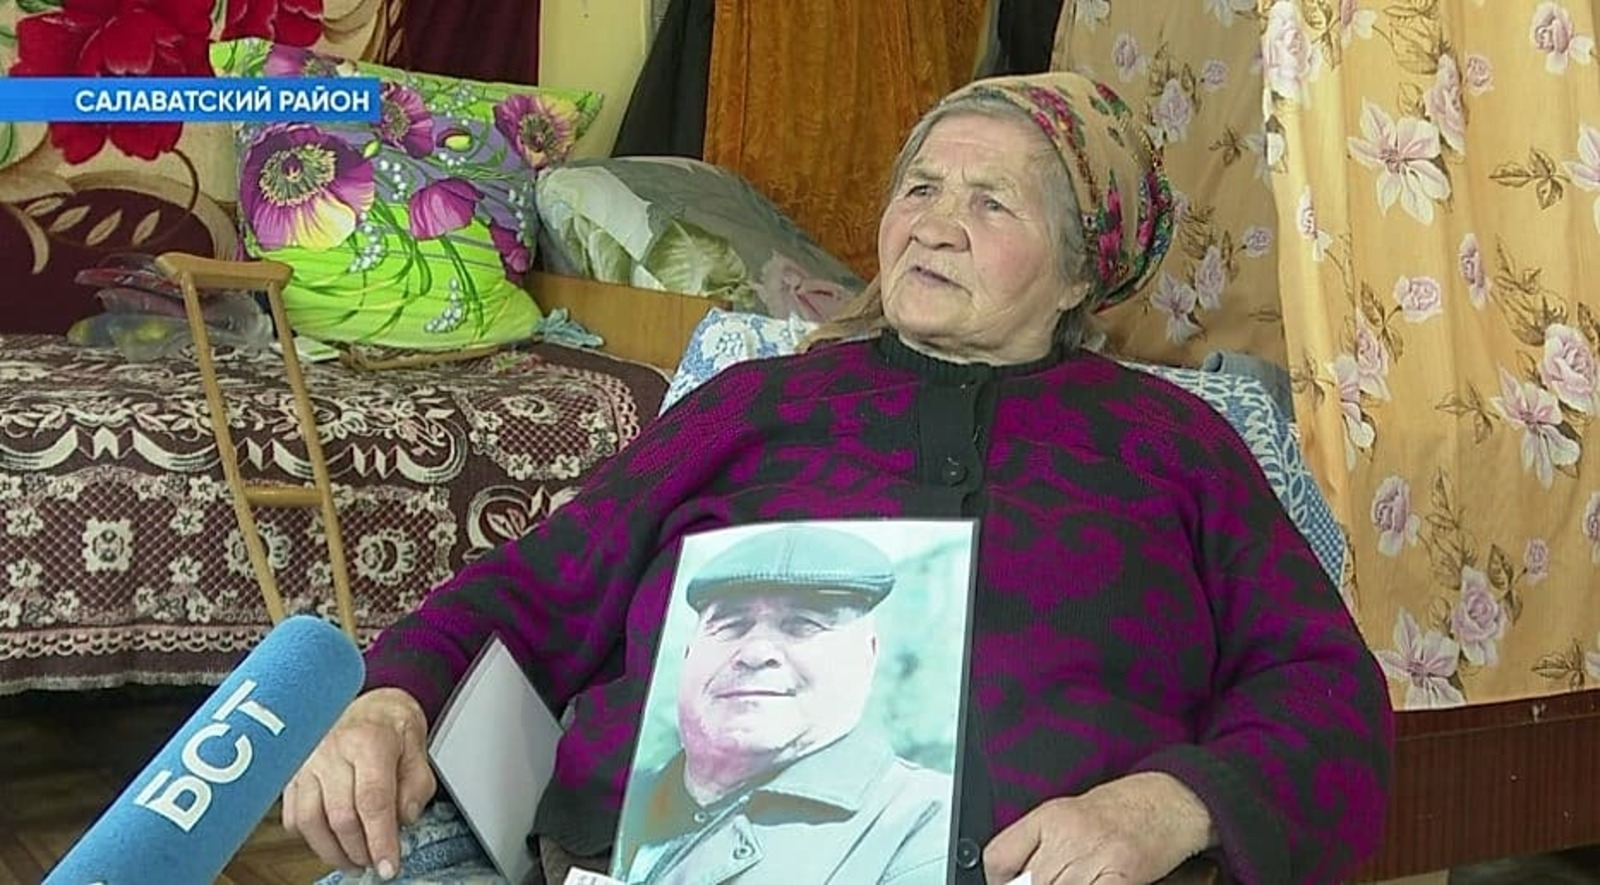 Жительнице Салаватского района уже два года приходят коммунальные квитанции на имя умершего мужа